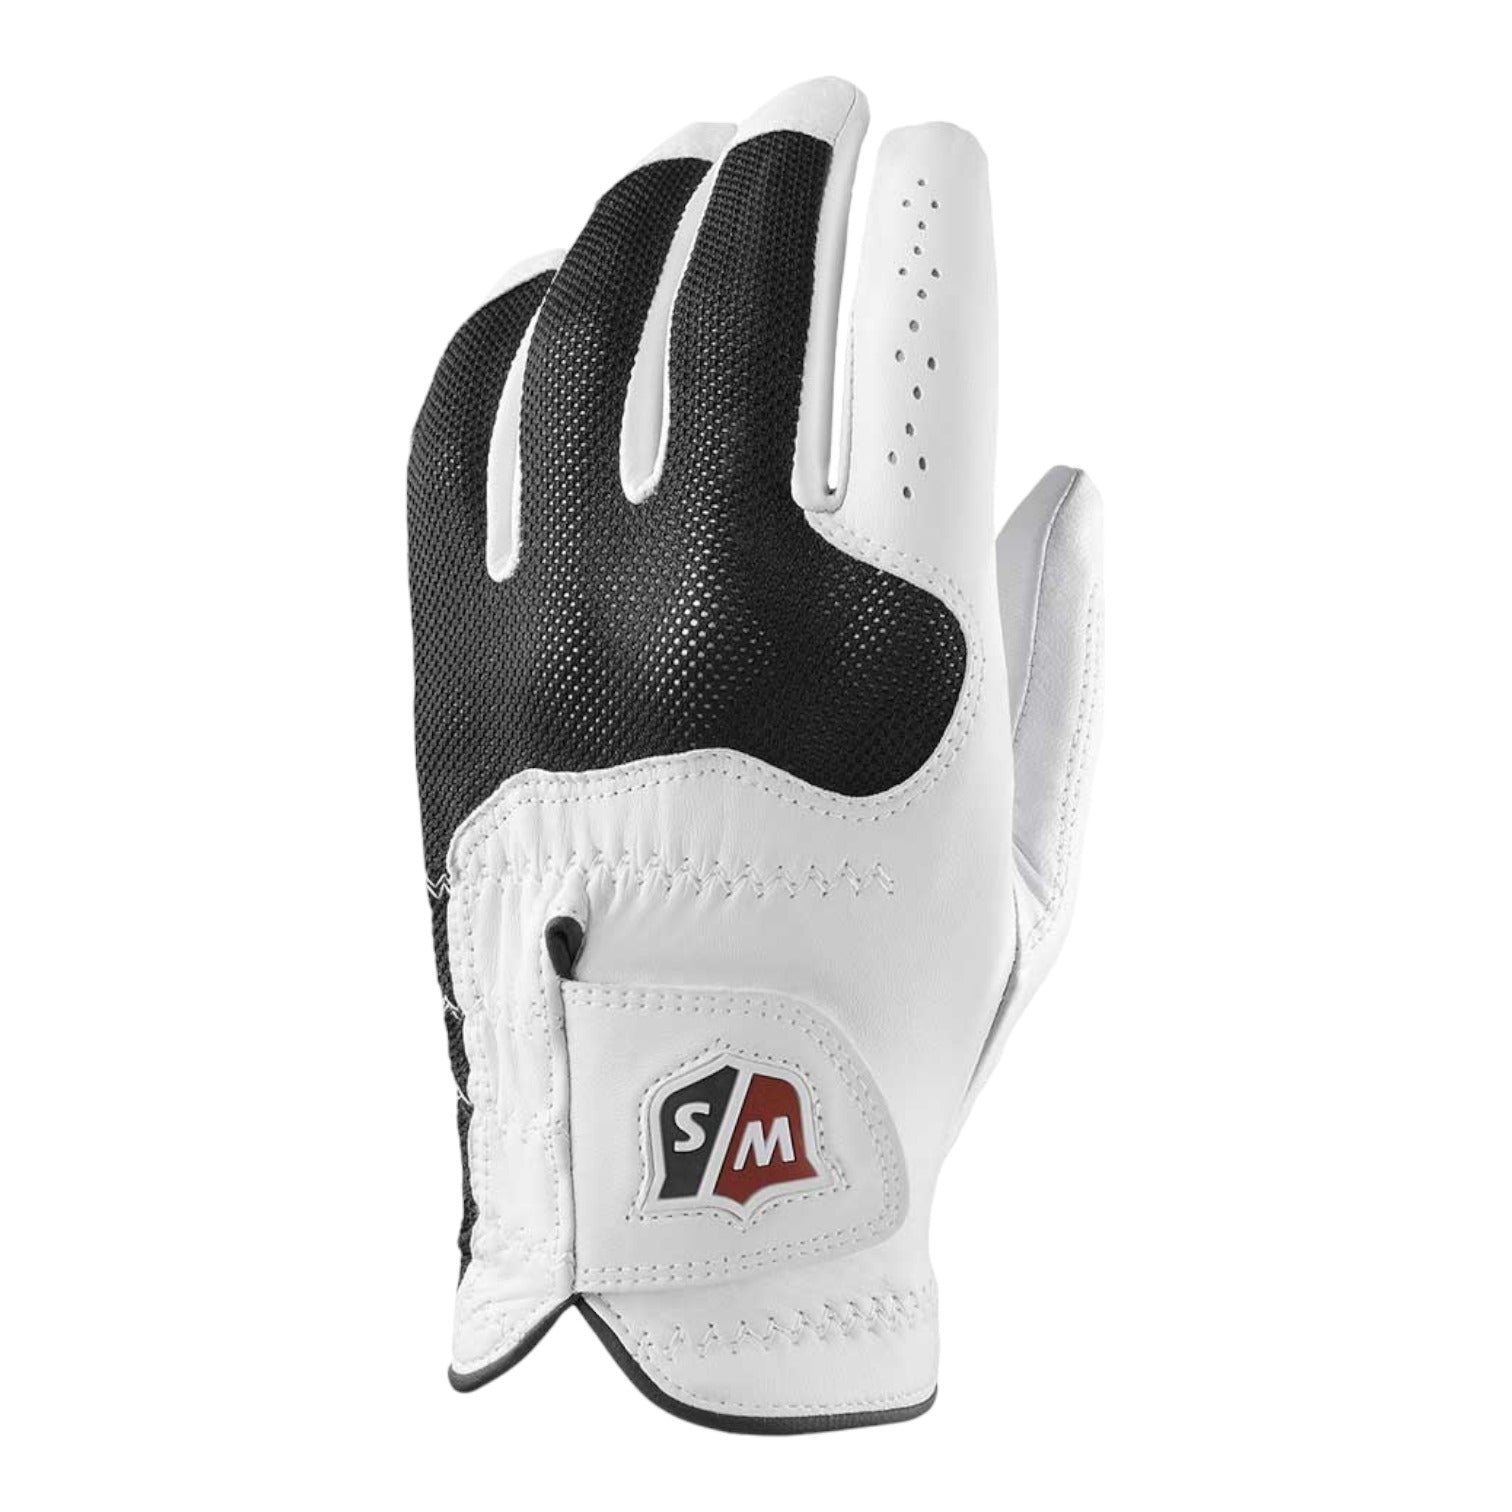 Wilson Staff Conform Leather Glove WGJA00315 RH (LH Player)